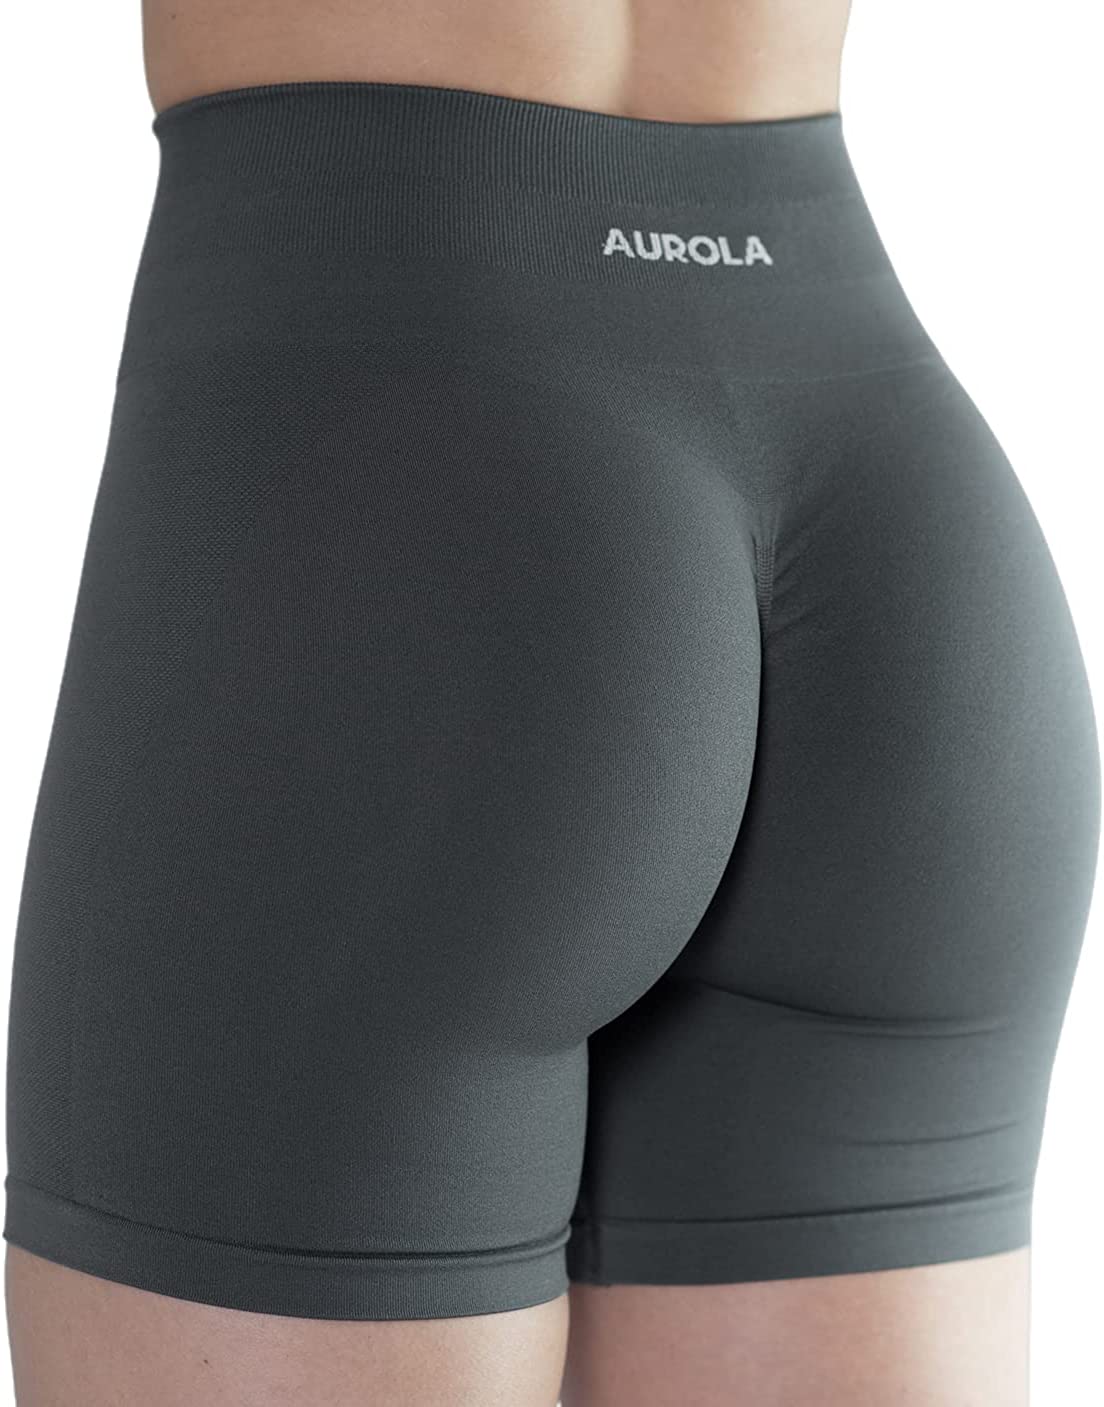 AUROLA Intensify Workout Shorts for Women Seamless Scrunch